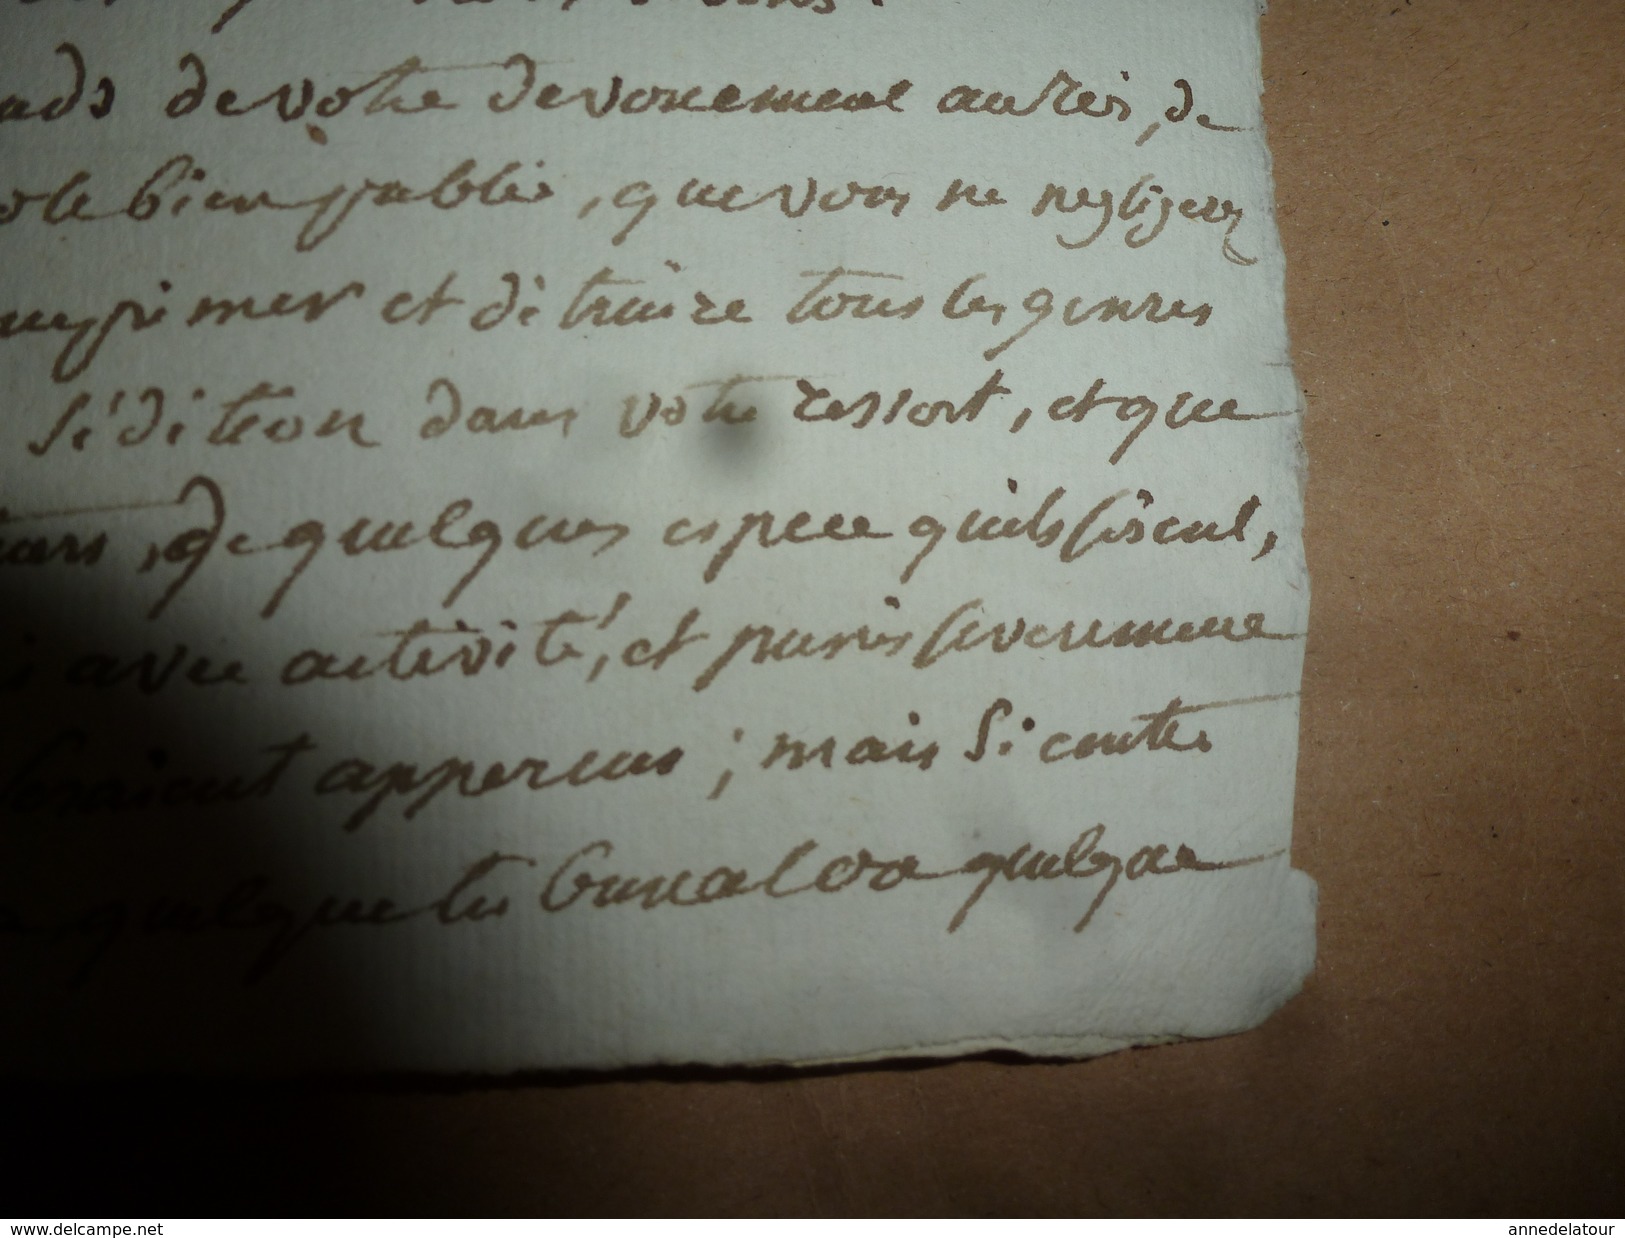 1815 Sur la Répression des cris séditieux et provocation à la Révolte : rapport manuscrit du ministre MARBOIS